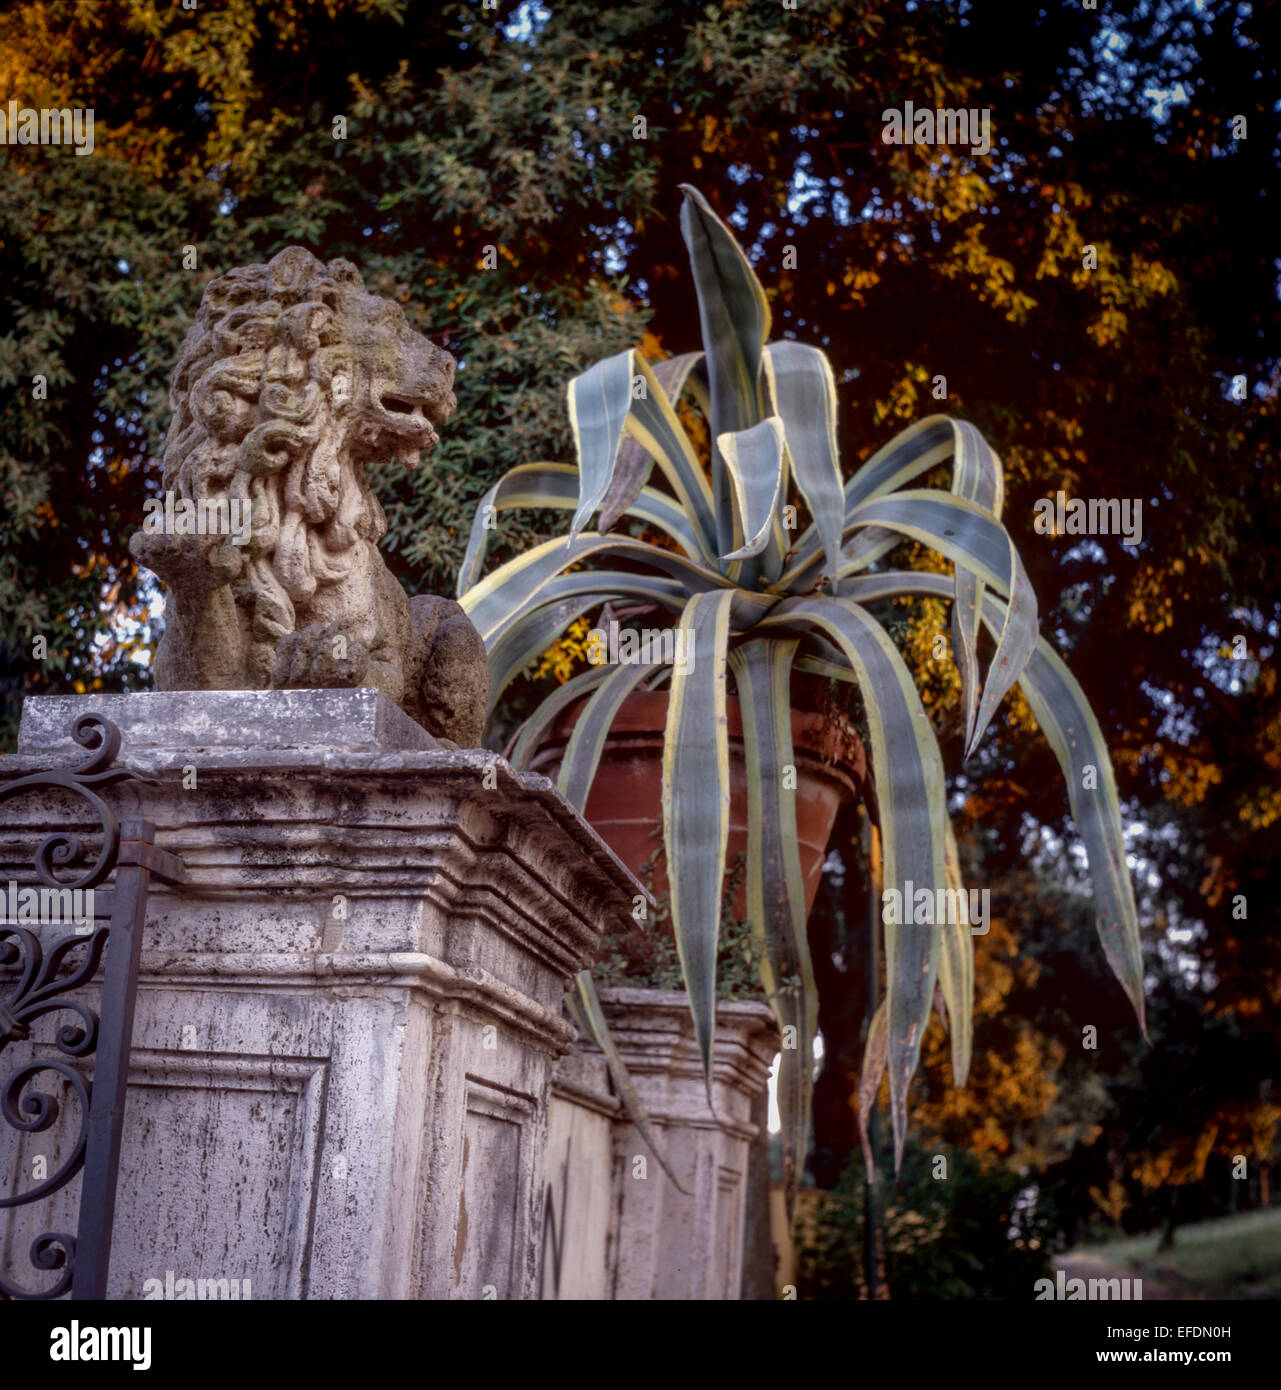 Agave im Topf, Garten Rom, Italien Agave Topf Stockfoto